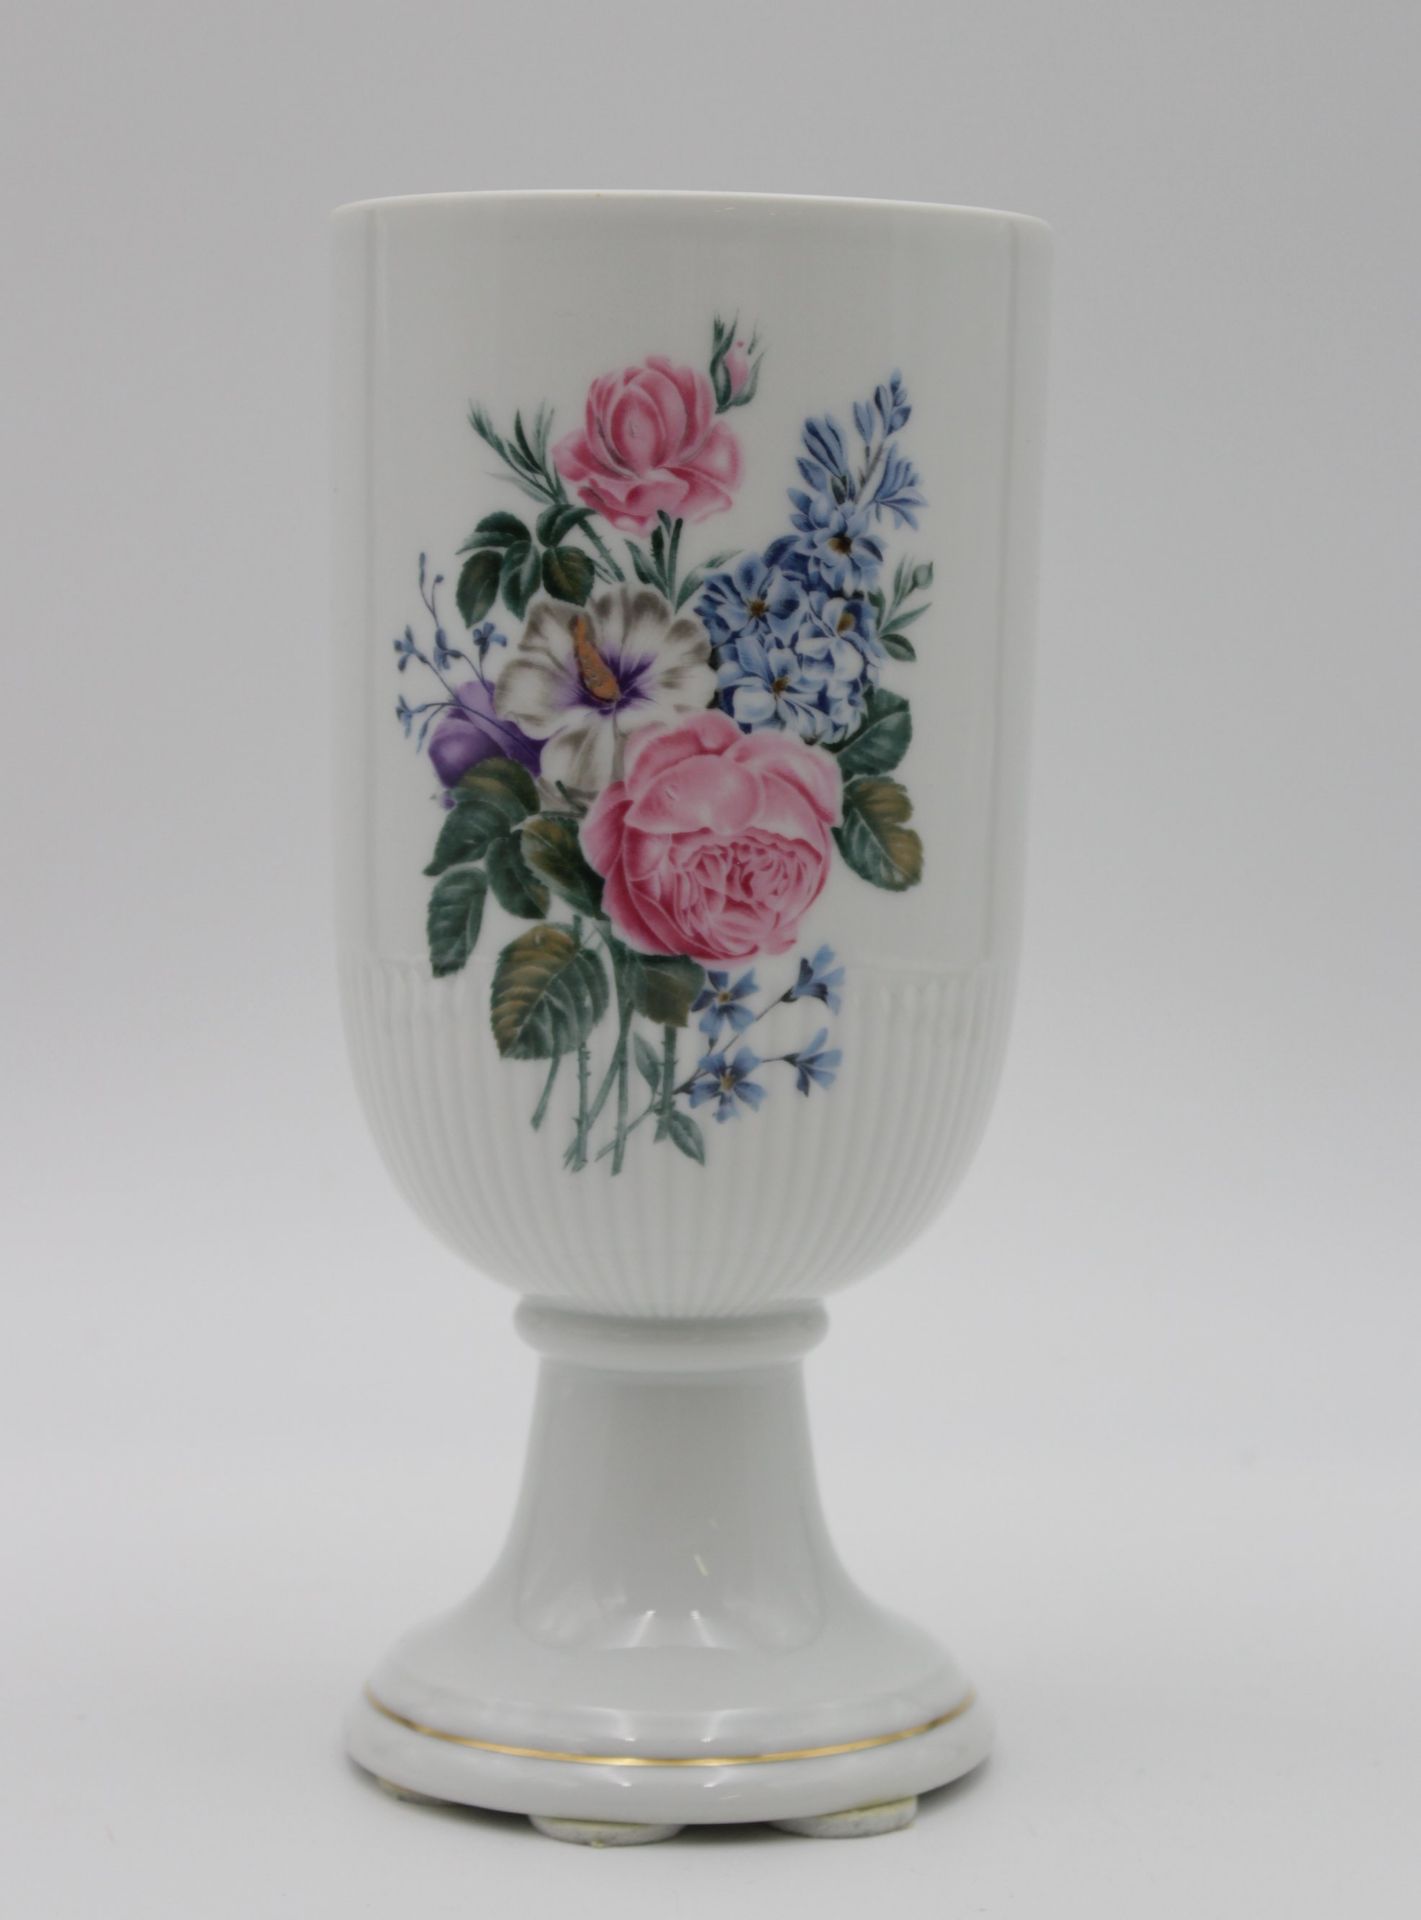 Vase auf Stand, Hutschenreuther, florales Dekor, Marke durchschliffen, H-20,8cm.